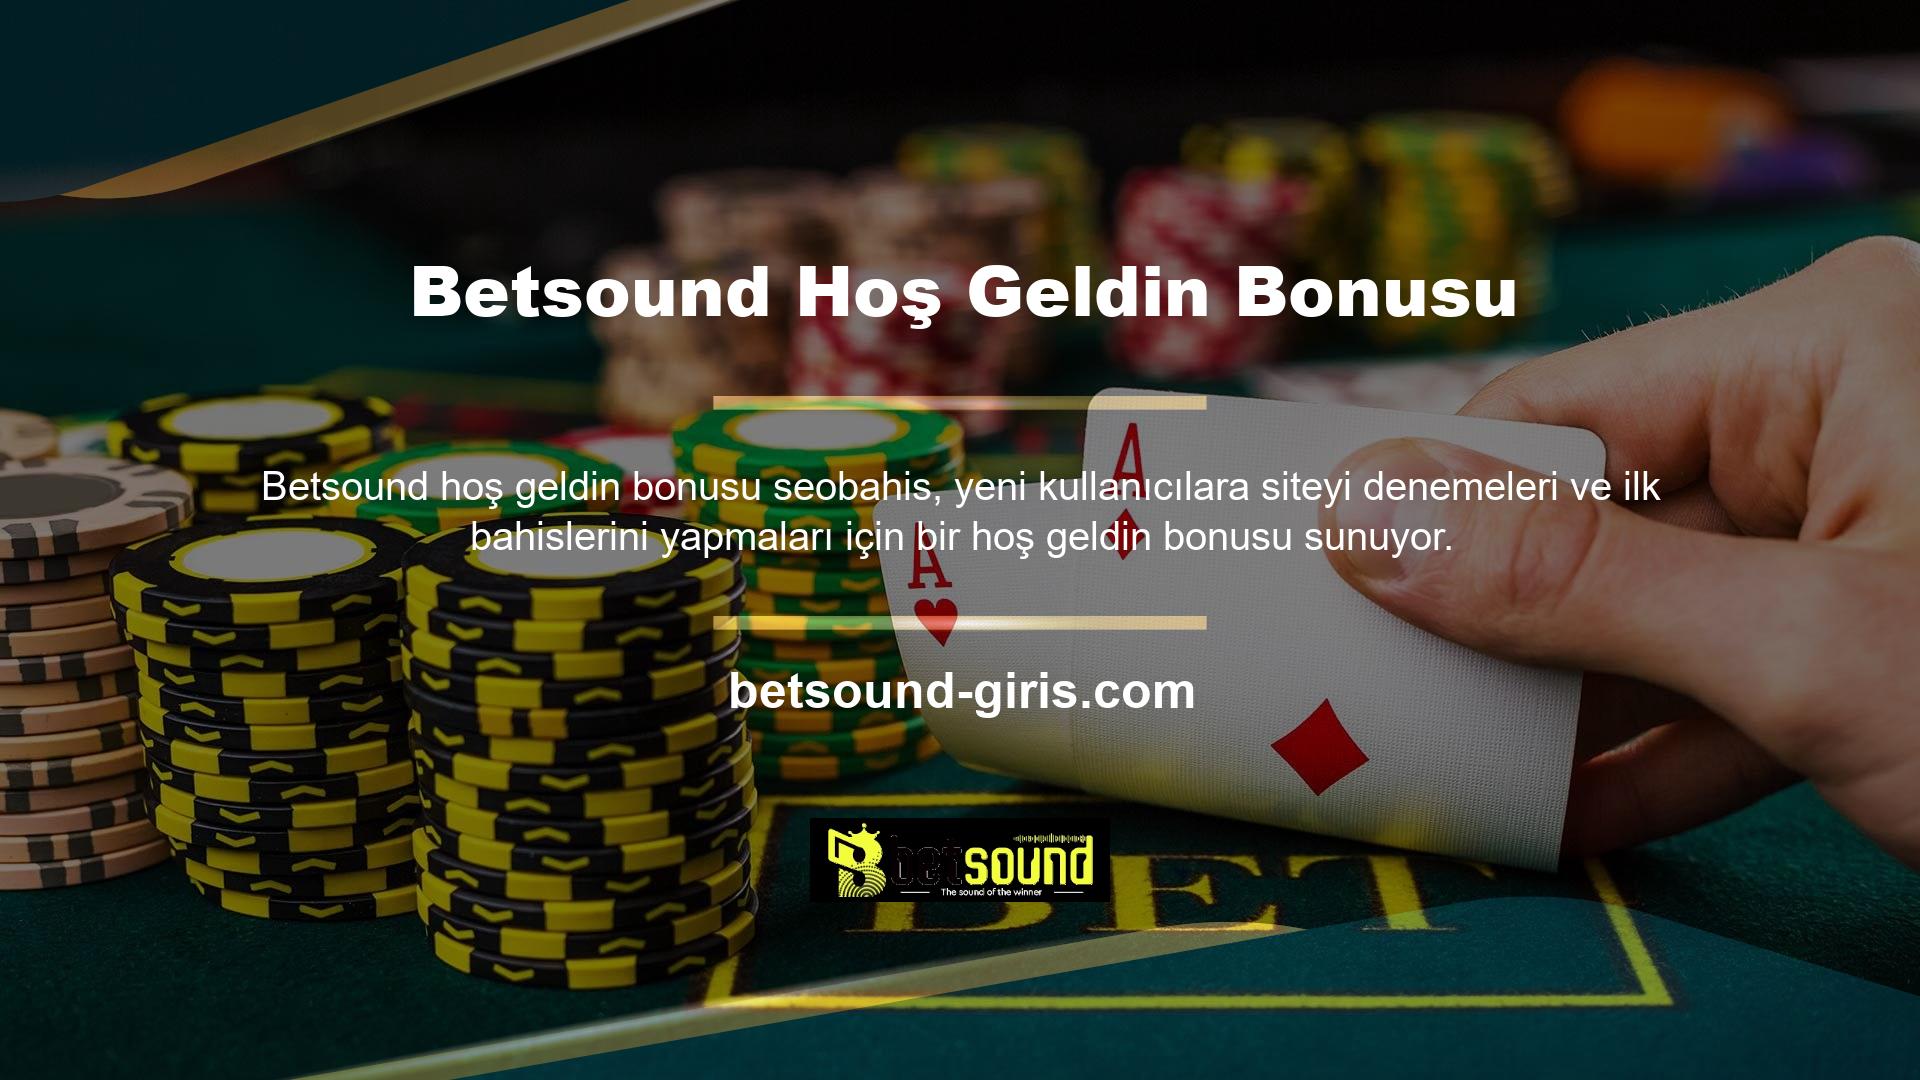 Hoş geldin bonusu fırsatından yararlanmak istiyorsanız Betsound kayıt sayfasını ziyaret ederek üye olabilirsiniz